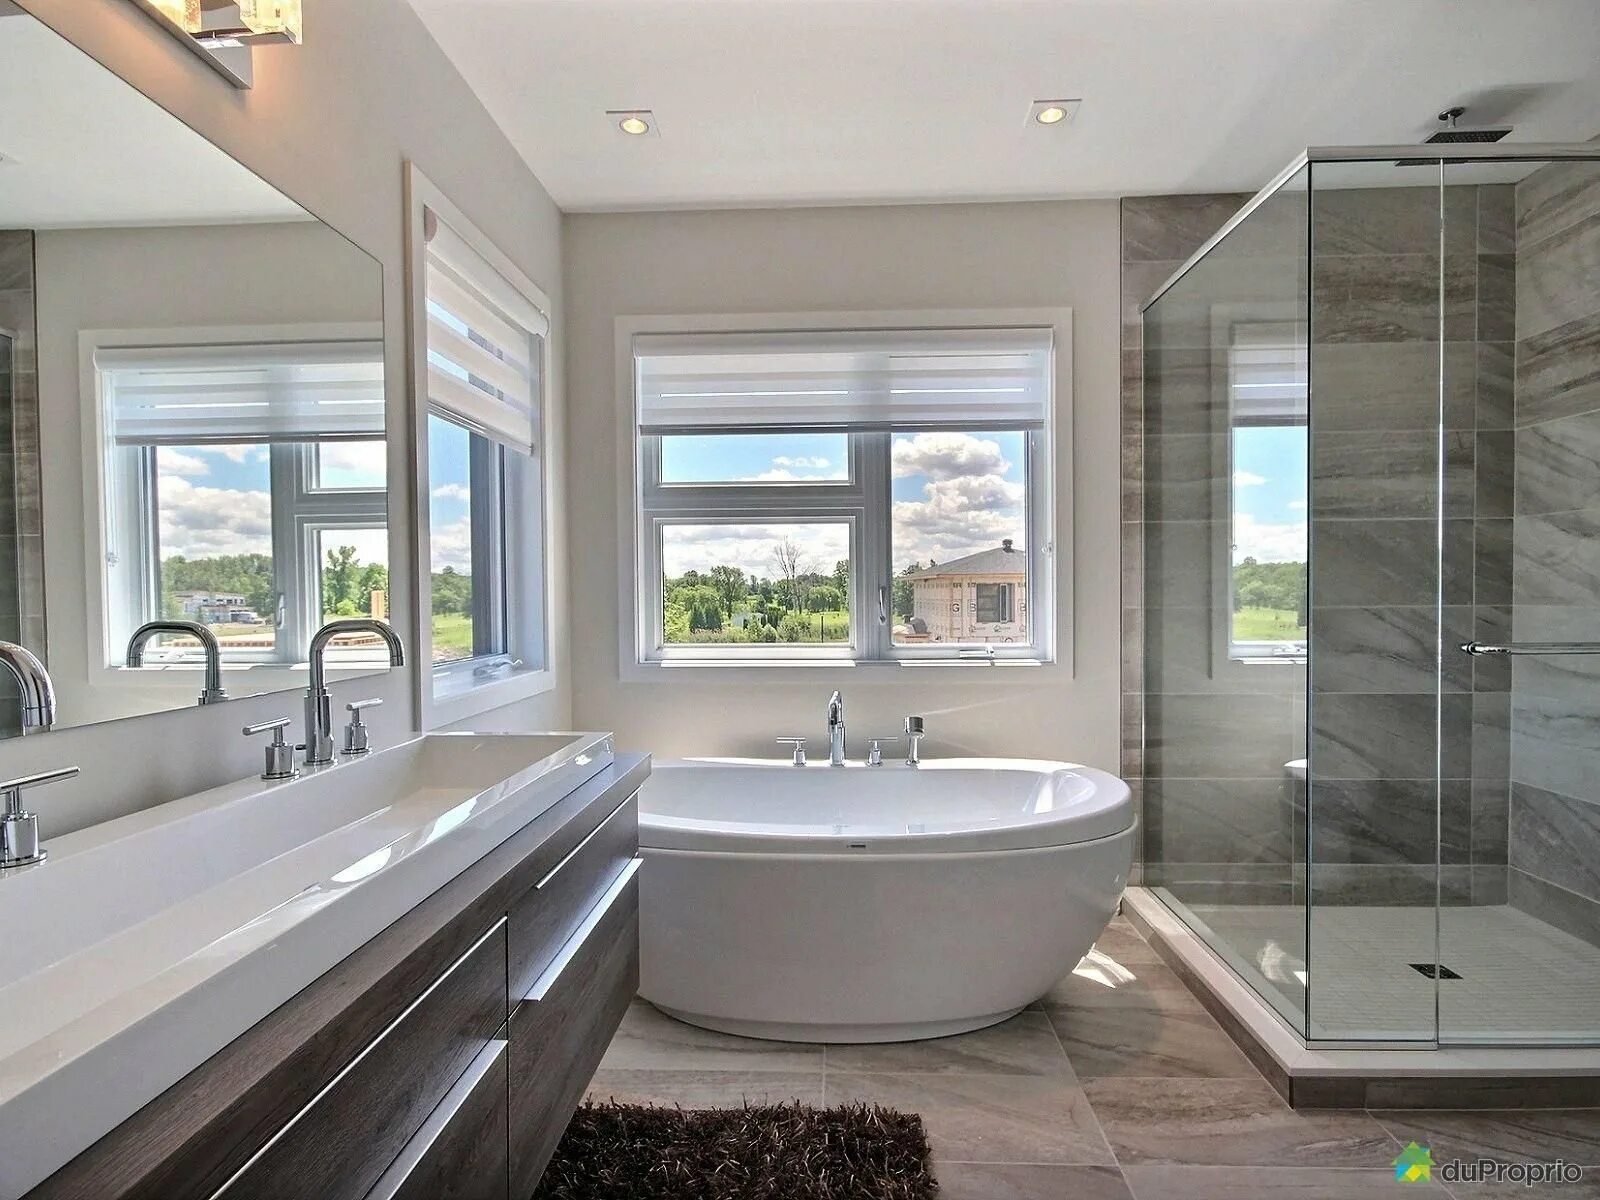 Ванная комната с большим окном. Ванная с большими окнами. Ванная с окном. Стильная ванная с окном. Ванна с большим окном